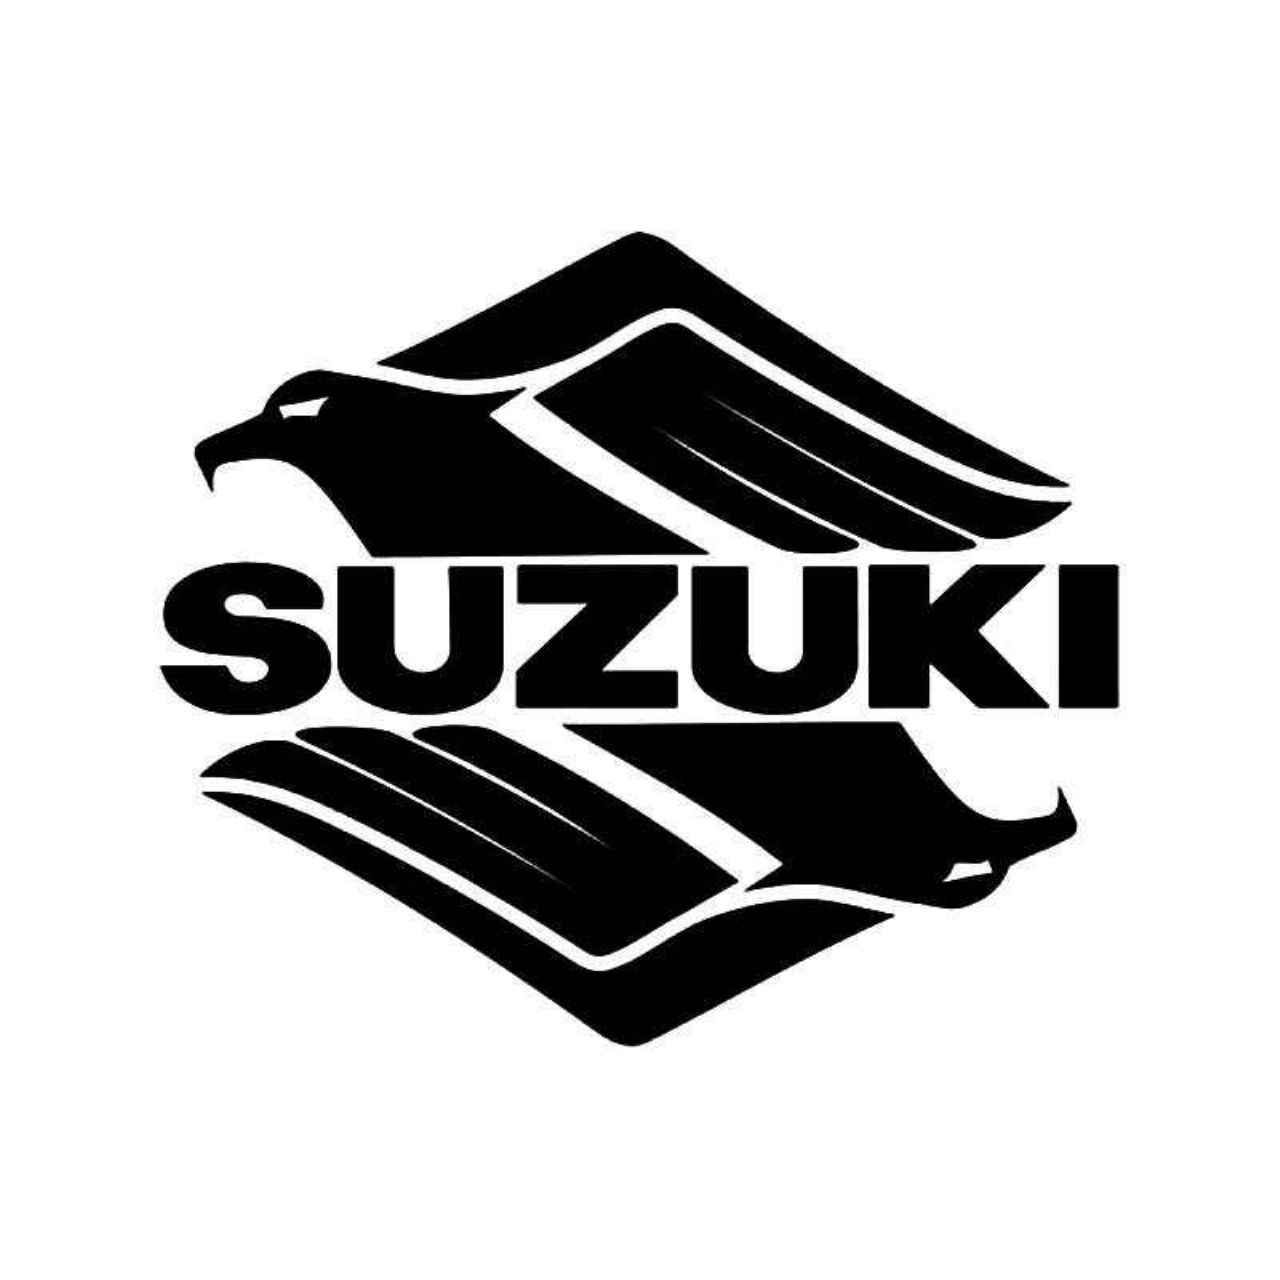 suzuki motorcycles logo